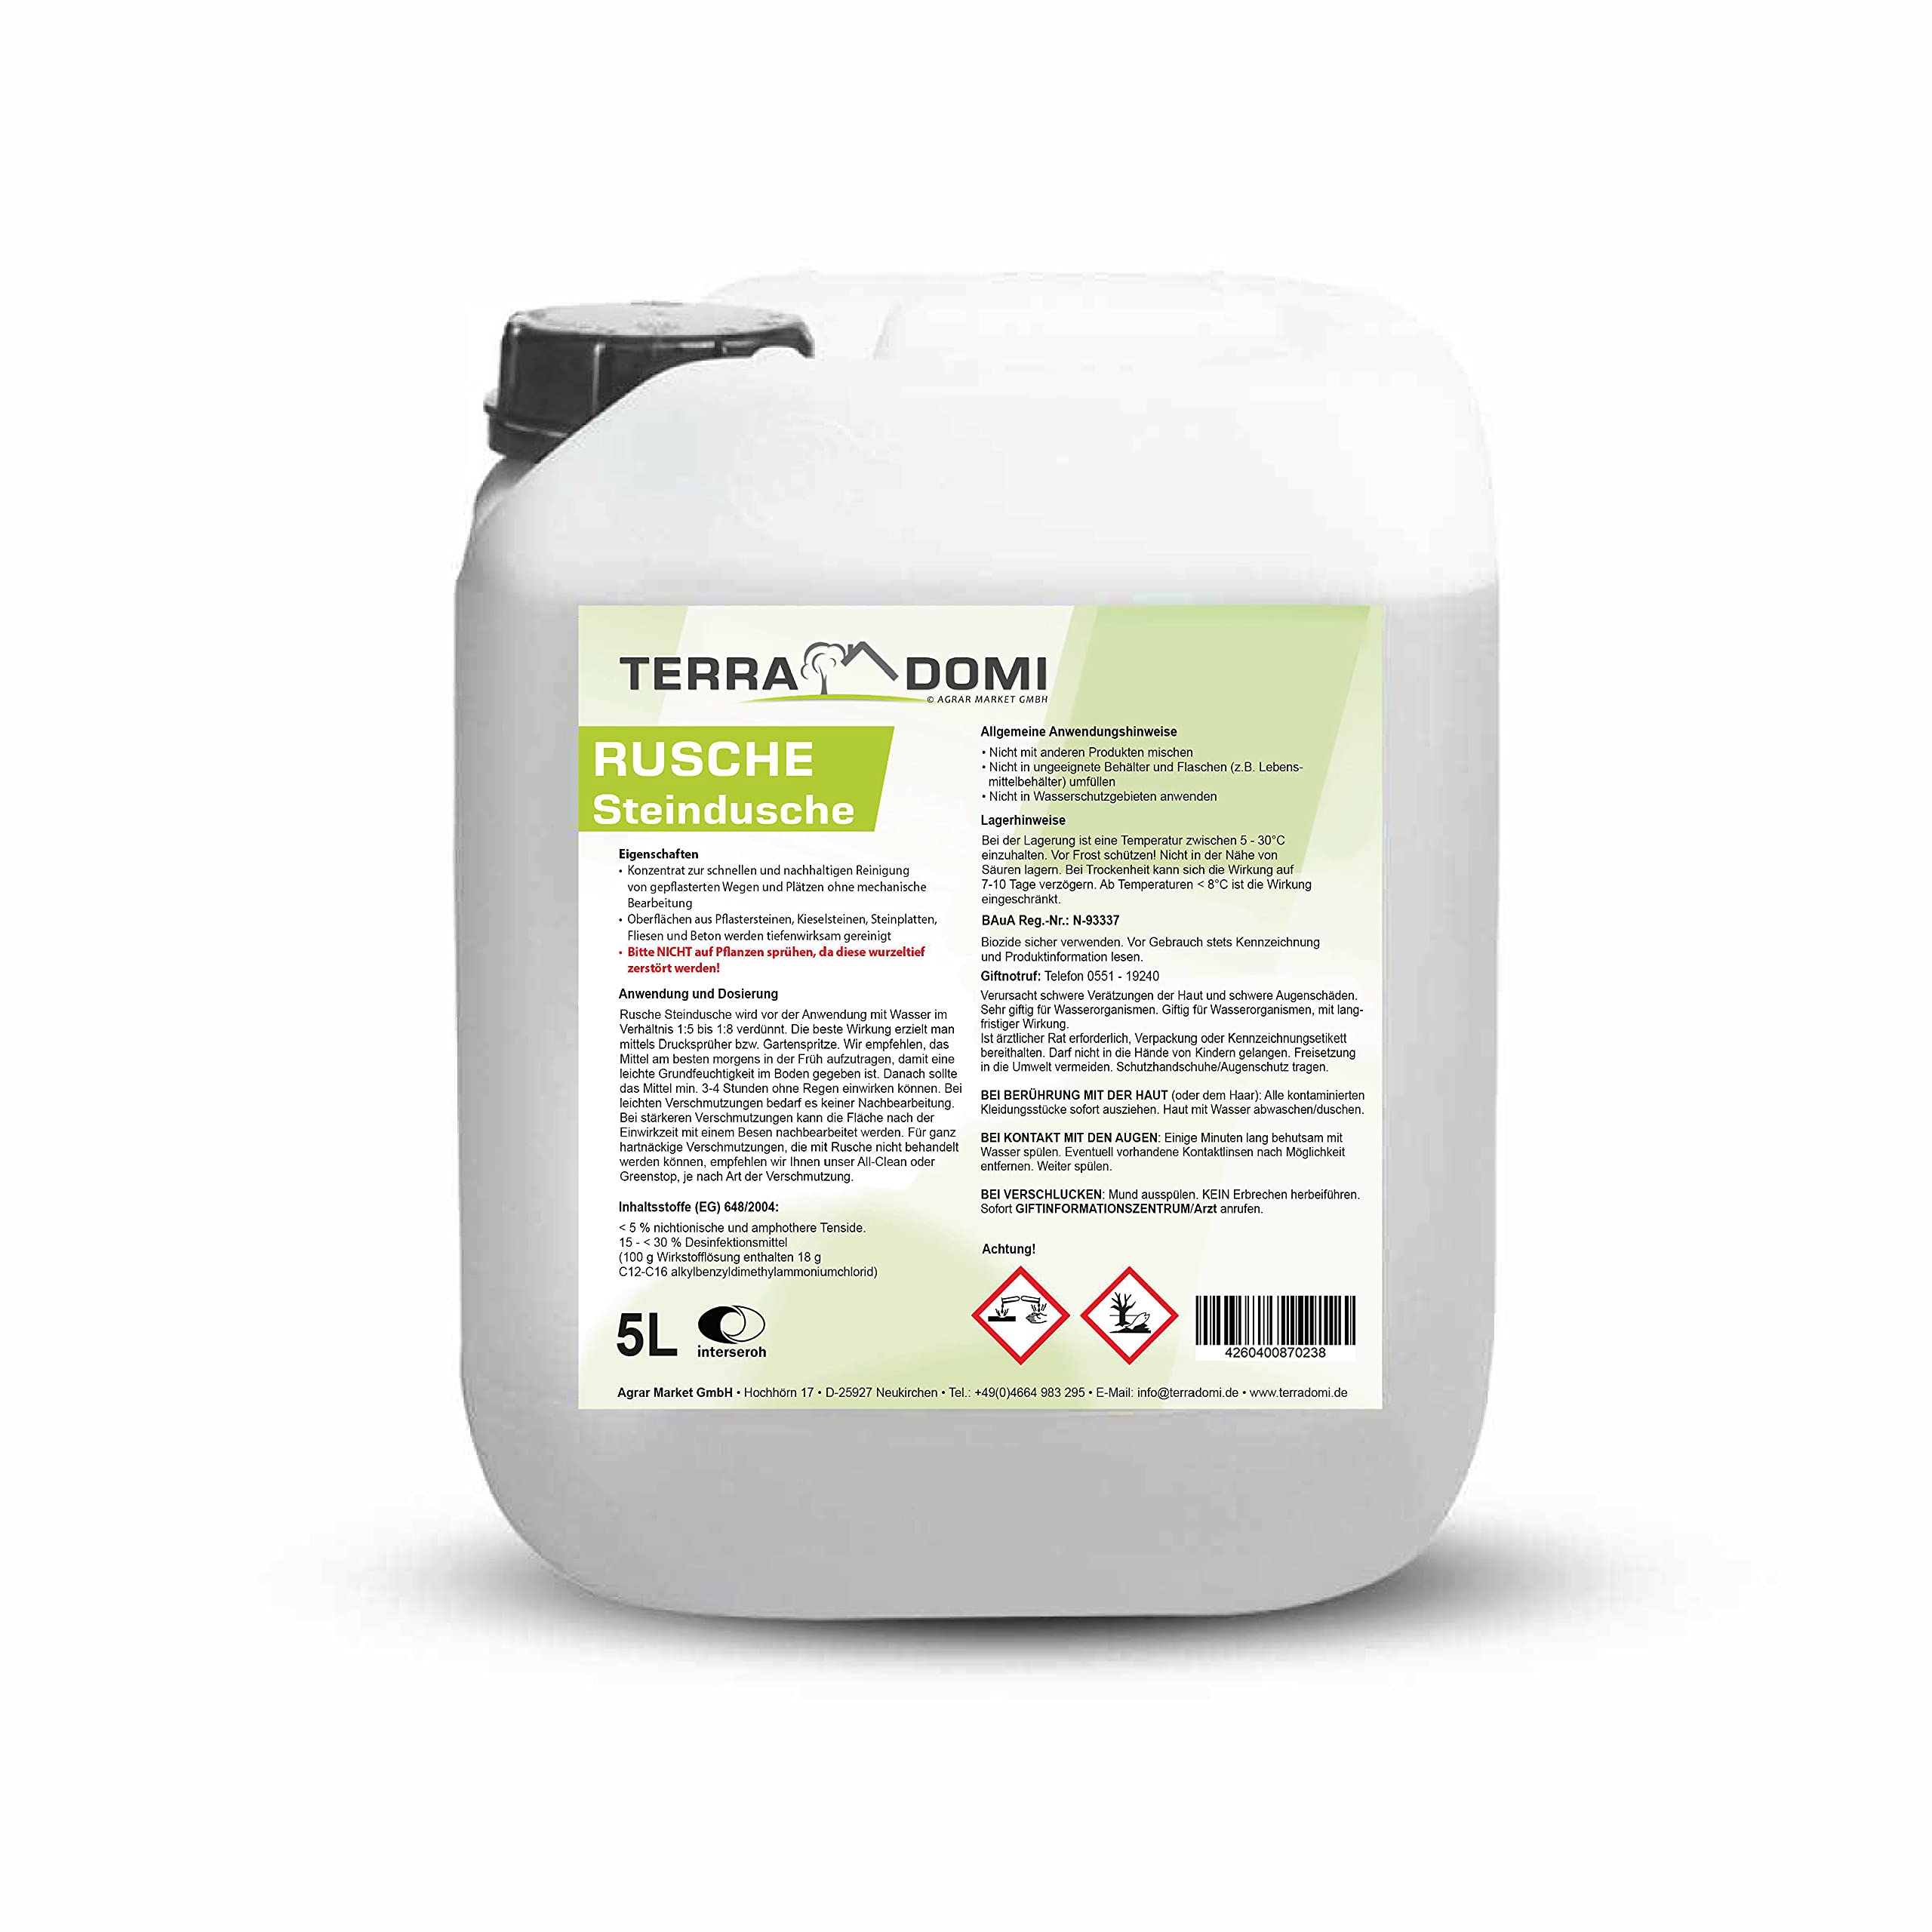 Terra Domi Rusche Steindusche, 5 Liter Konzentrat, Steinreiniger für bis zu 2000 m², Reinigungsmittel für saubere Wege & Plätze, biologisch abbaubar, ohne Glyphosat